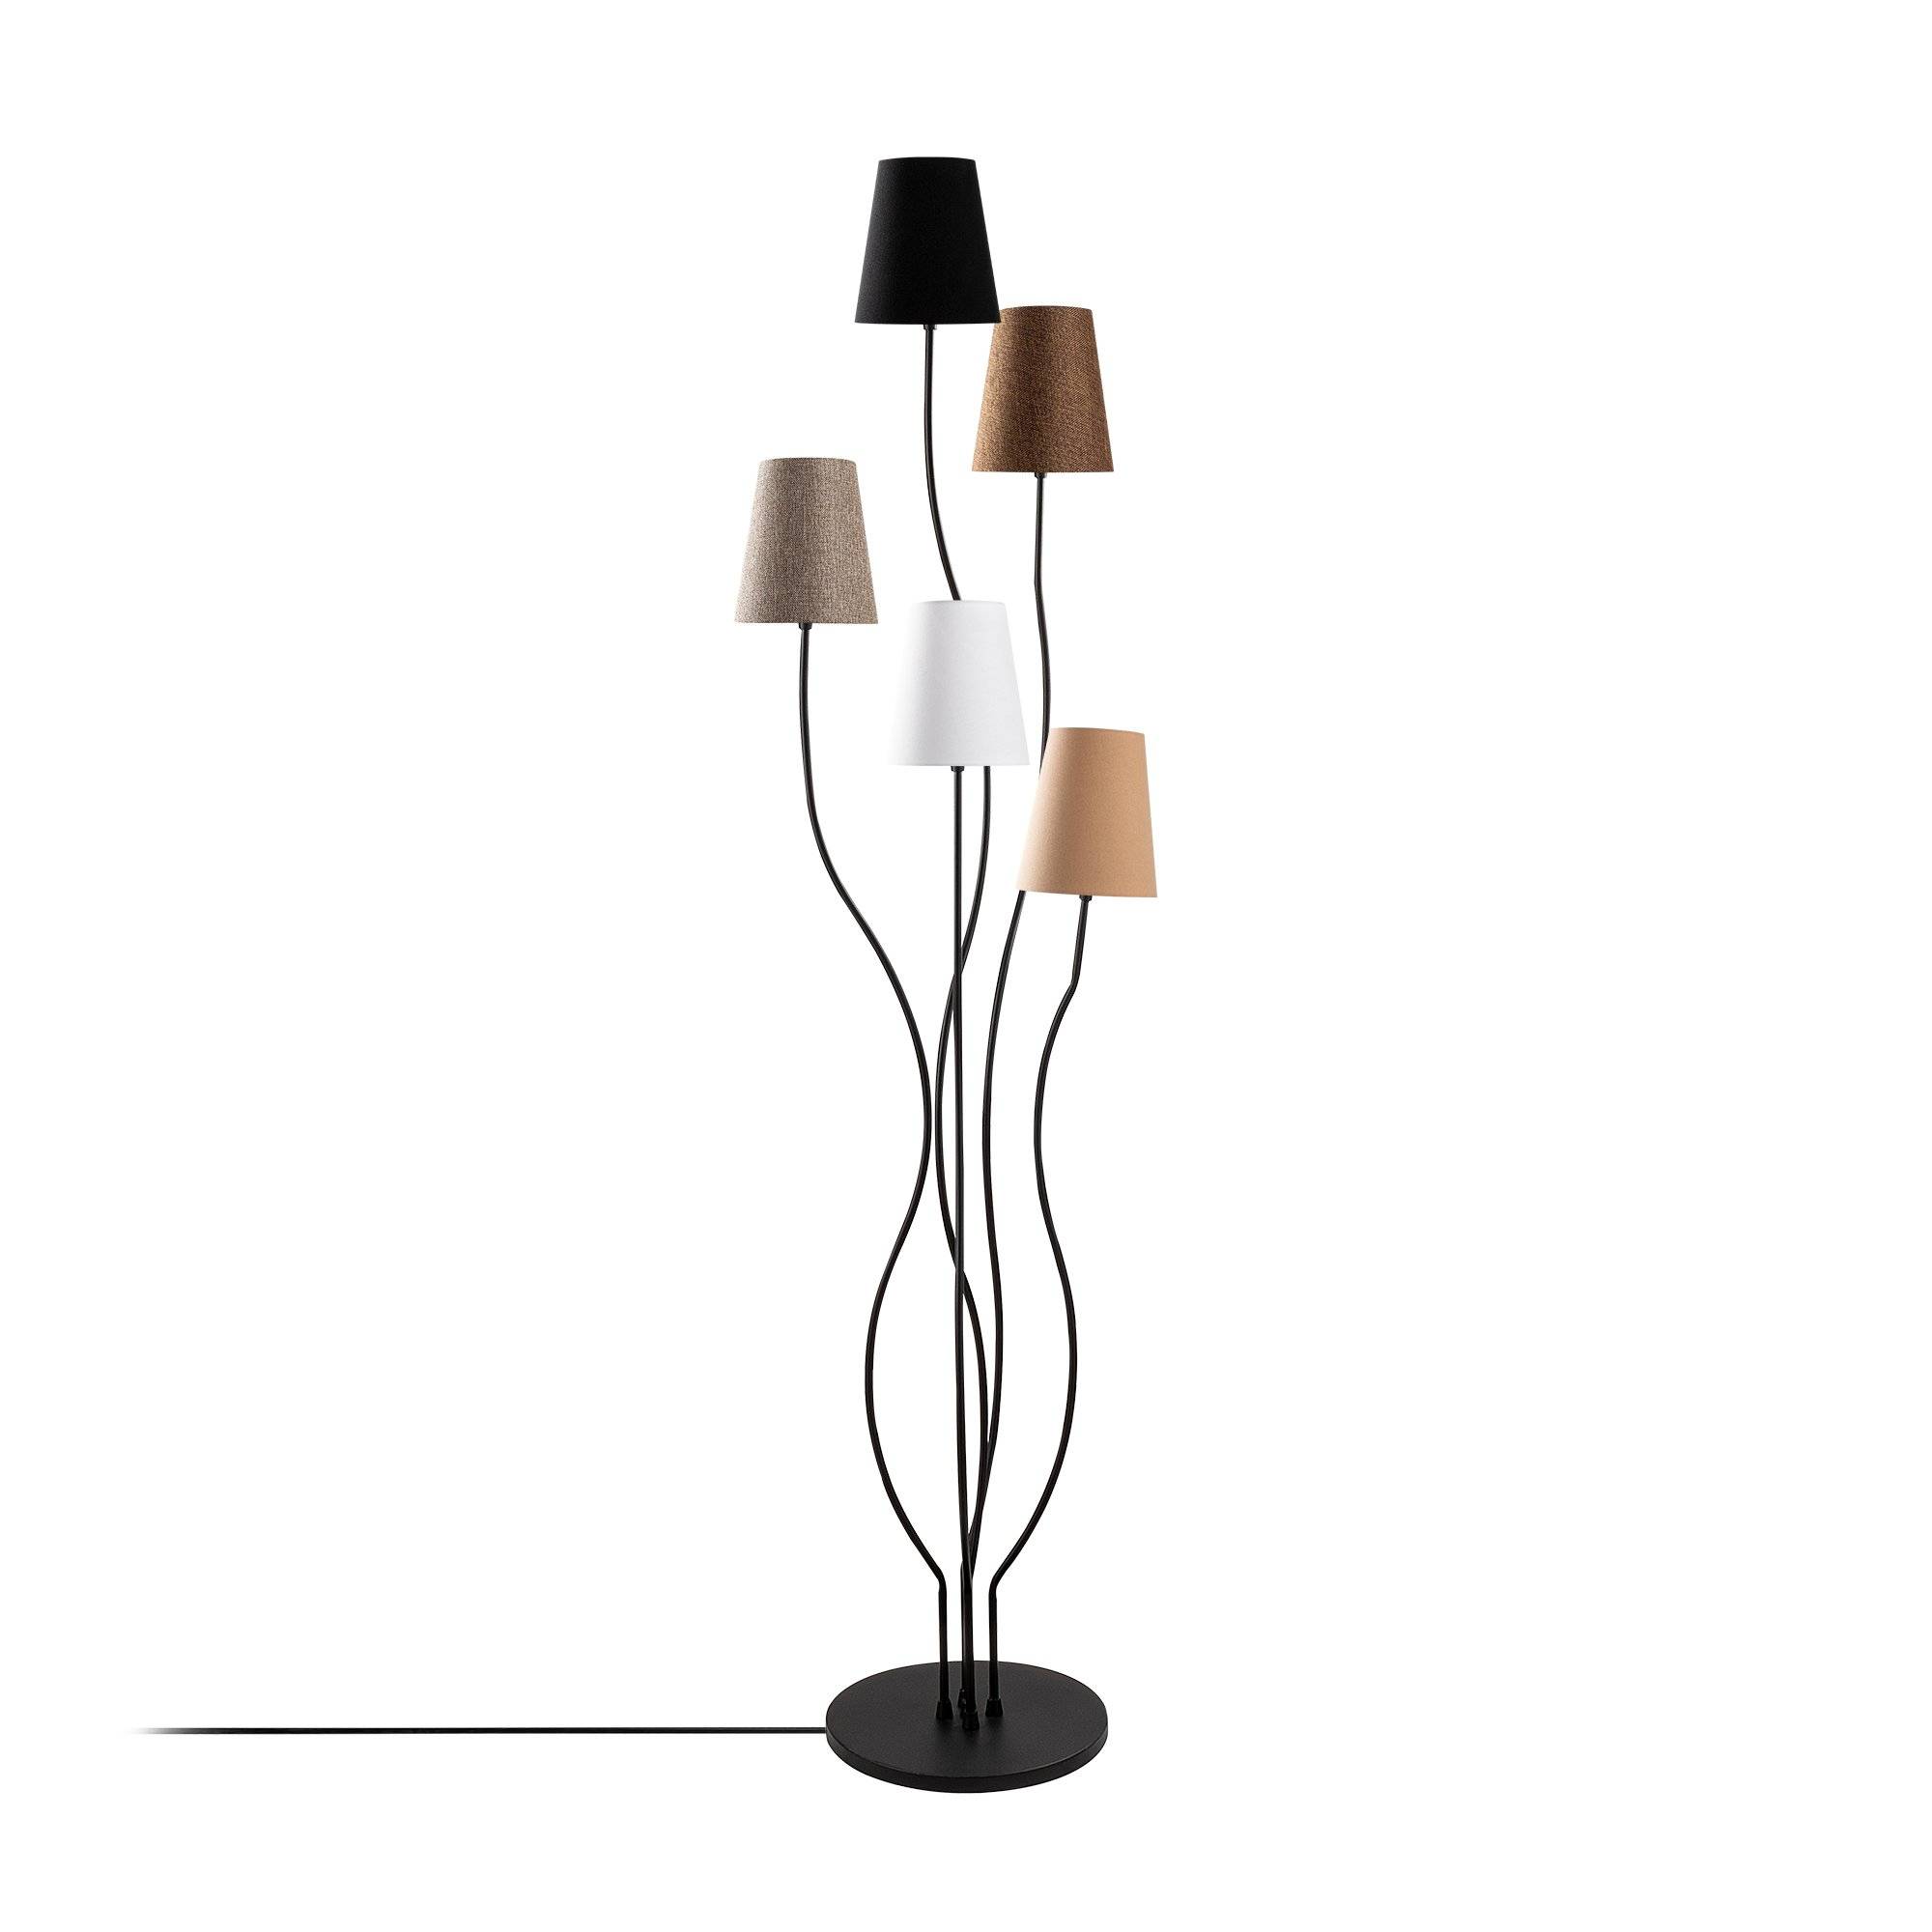 Design Stehleuchte 5 Lampen Roselin H160cm Metall Schwarz und Stoff Weiß, Braun, Beige, Grau und Schwarz